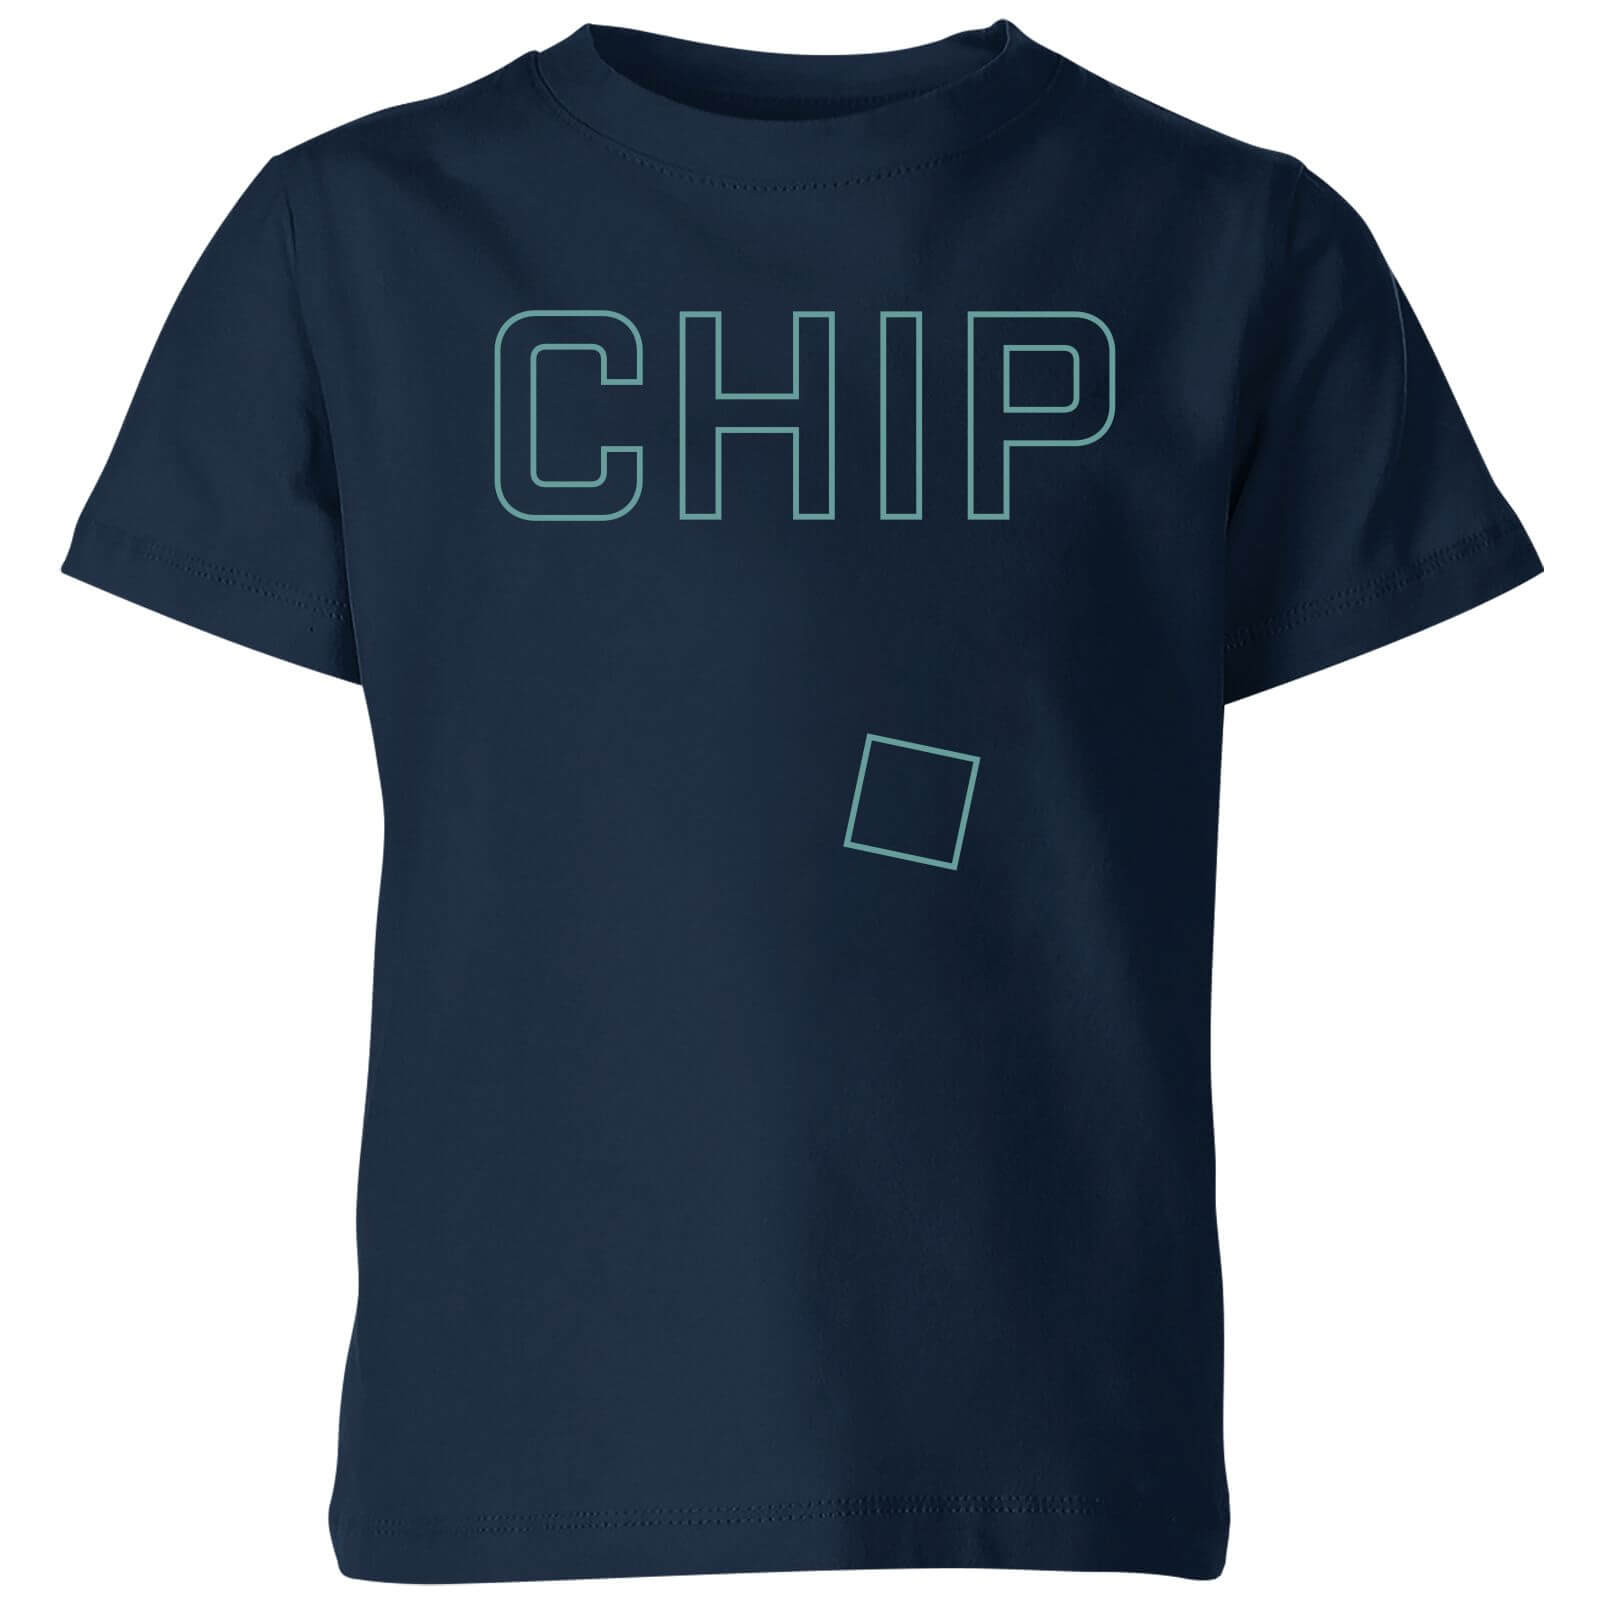 Chip Kids' T-Shirt - Navy - 3-4 Years - Navy